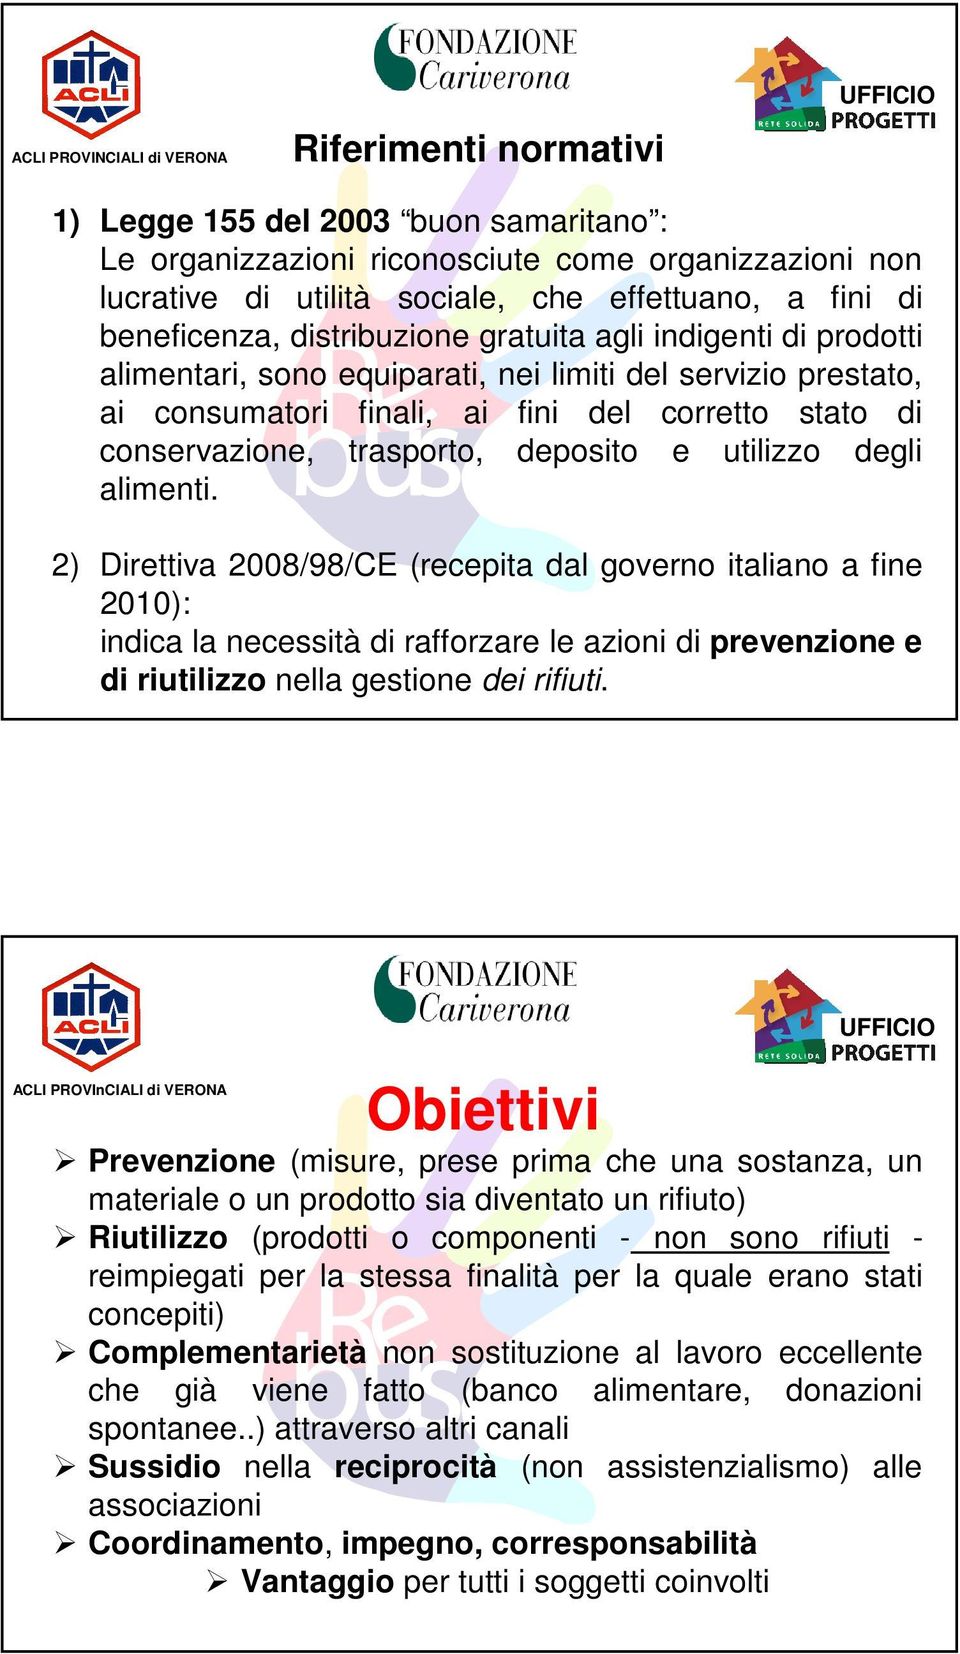 degli alimenti. 2) Direttiva 2008/98/CE (recepita dal governo italiano a fine 2010): indica la necessità di rafforzare le azioni di prevenzione e di riutilizzo nella gestione dei rifiuti.